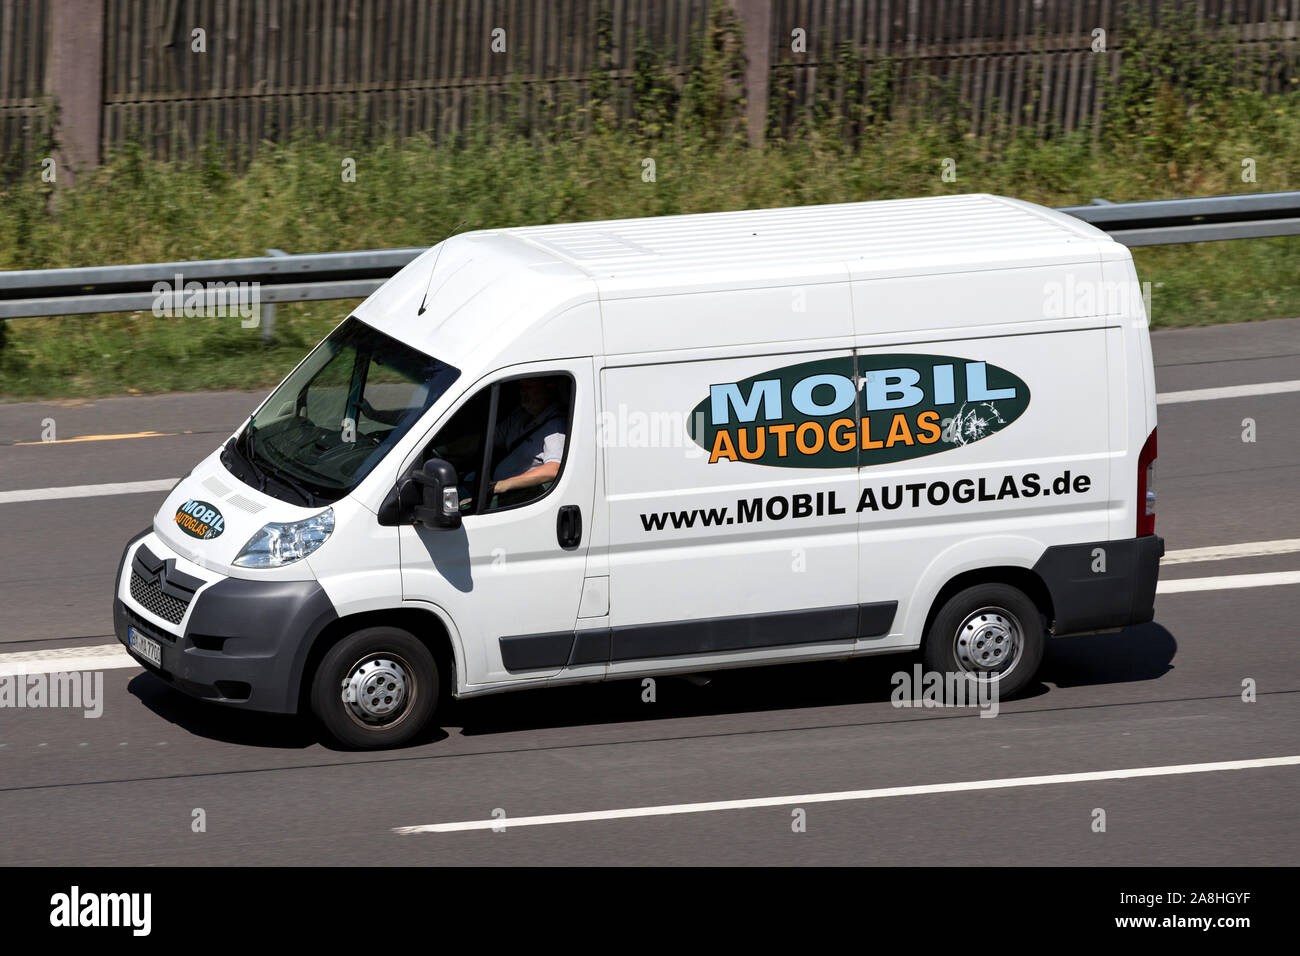 Mobil Autoglas Citroen Relay van on motorway. Stock Photo